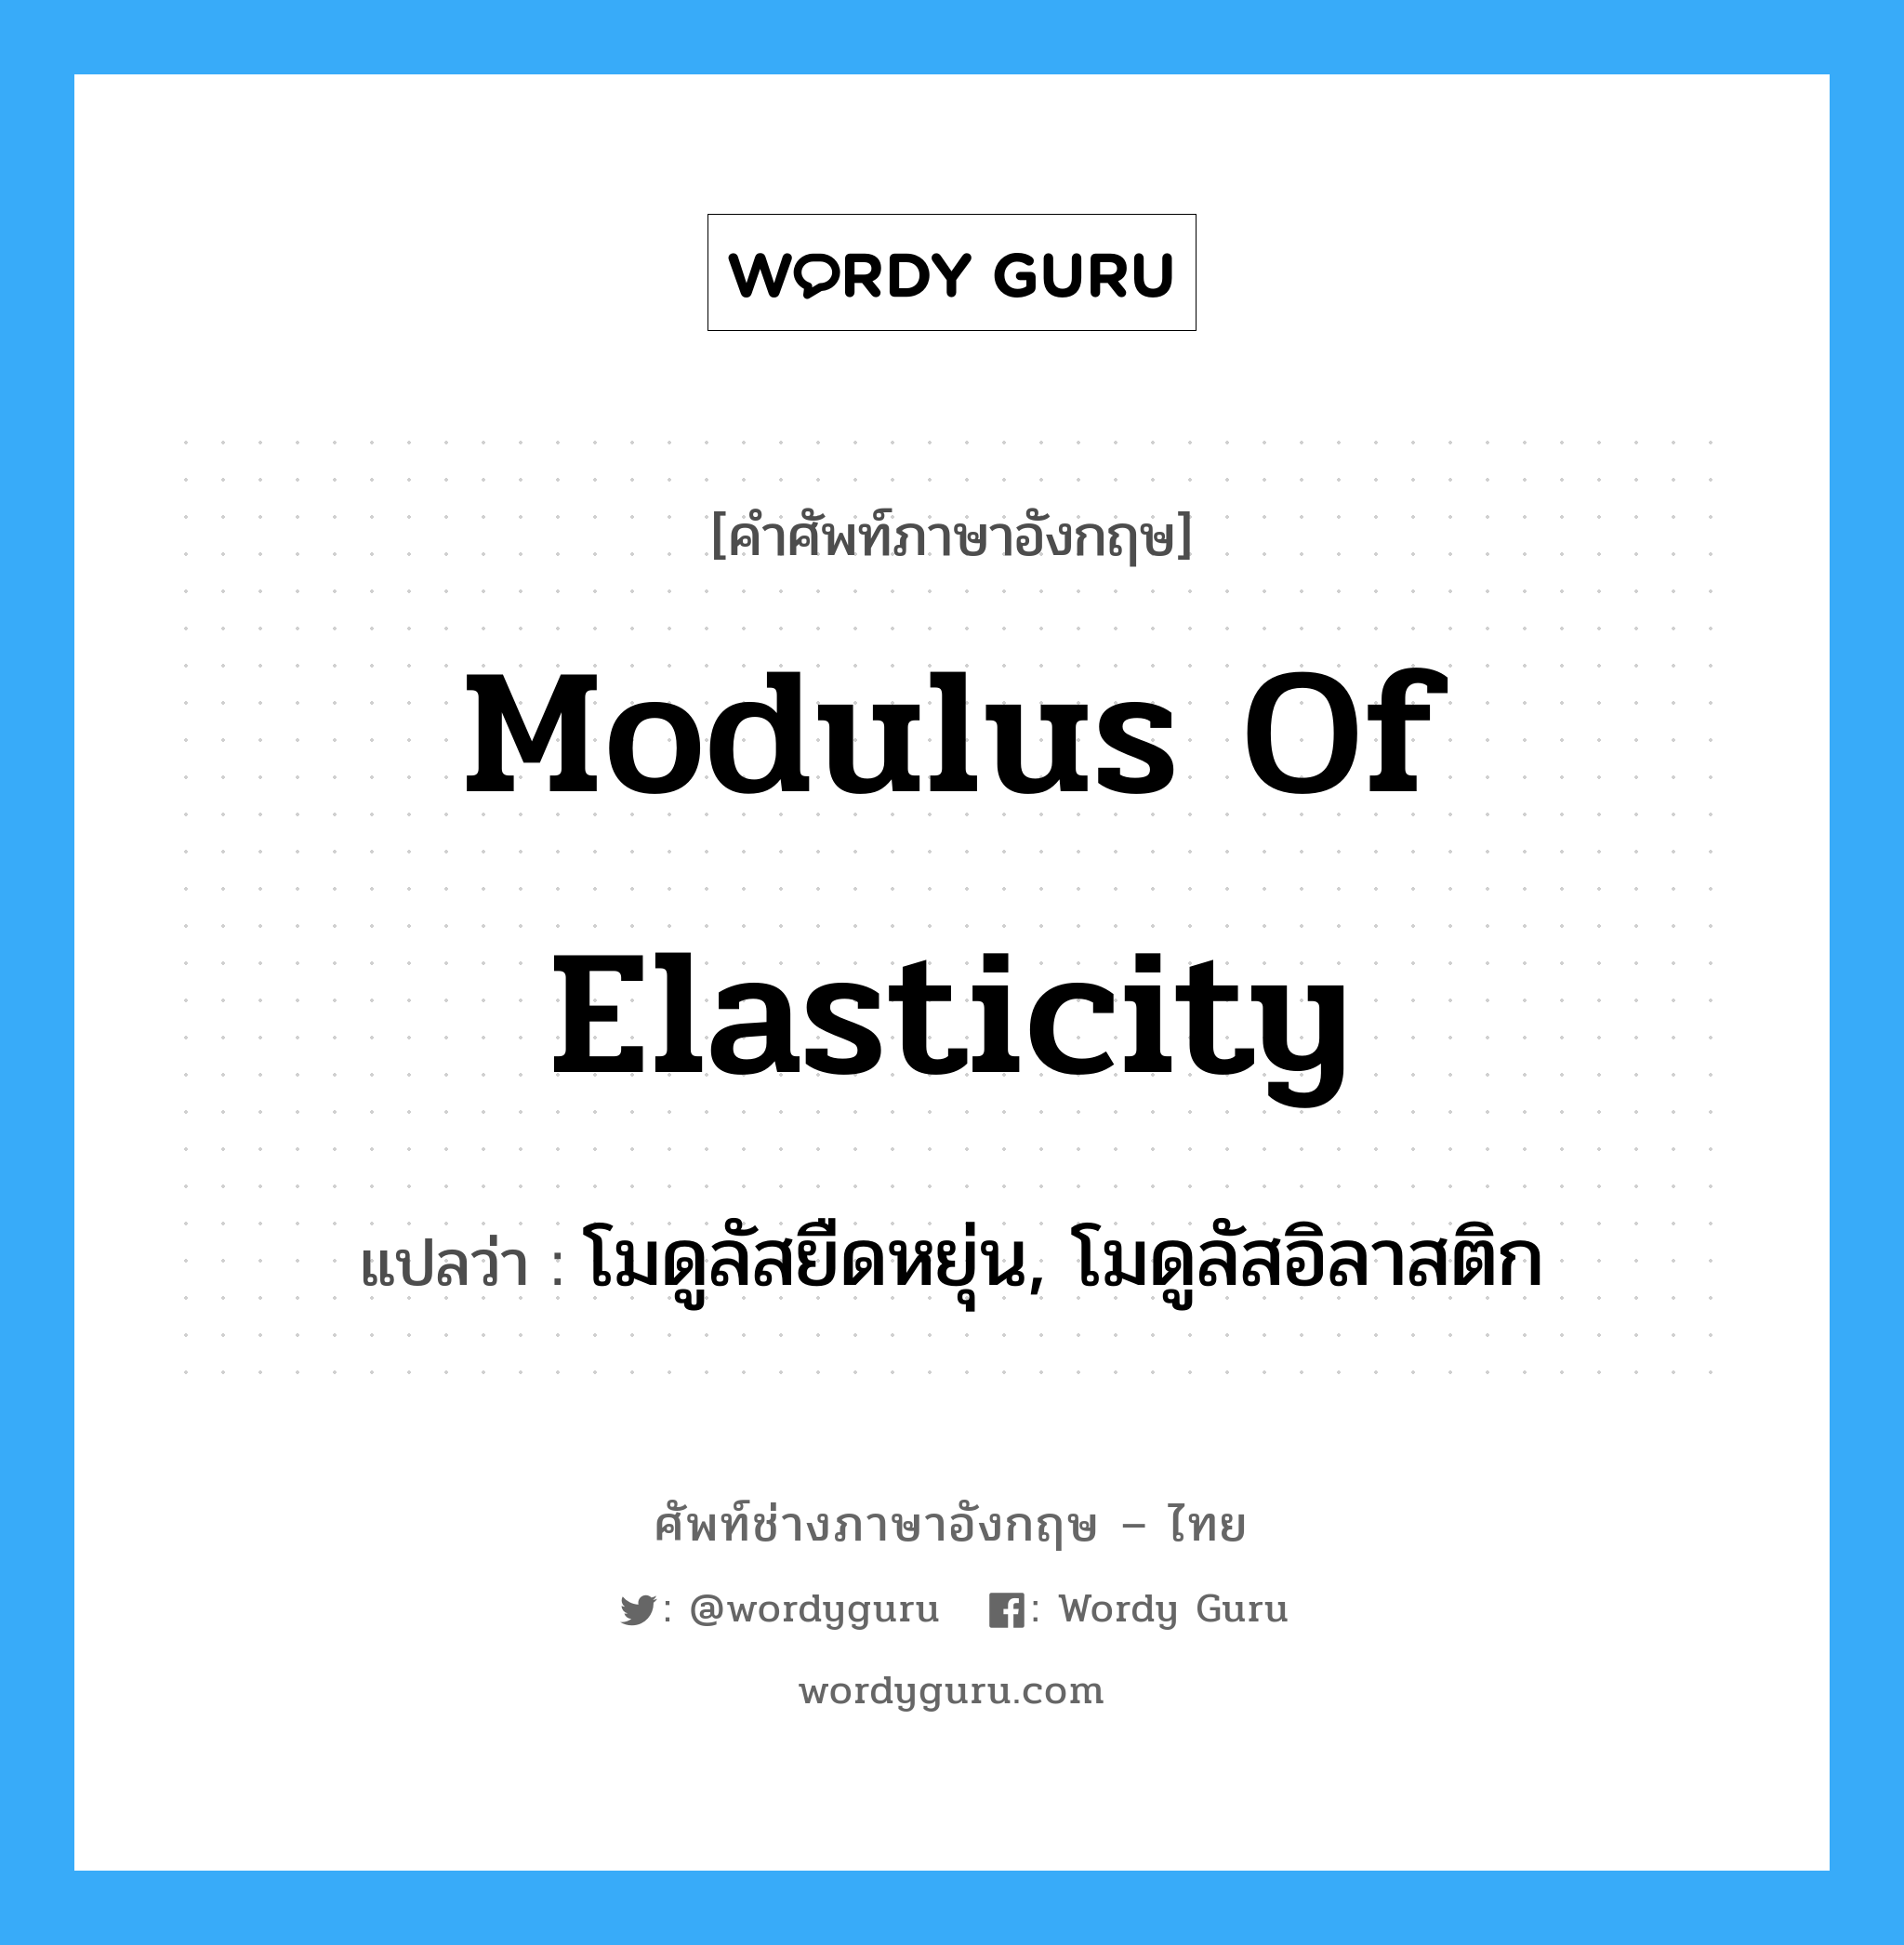 โมดูลัสยืดหยุ่น, โมดูลัสอิลาสติก ภาษาอังกฤษ?, คำศัพท์ช่างภาษาอังกฤษ - ไทย โมดูลัสยืดหยุ่น, โมดูลัสอิลาสติก คำศัพท์ภาษาอังกฤษ โมดูลัสยืดหยุ่น, โมดูลัสอิลาสติก แปลว่า modulus of elasticity